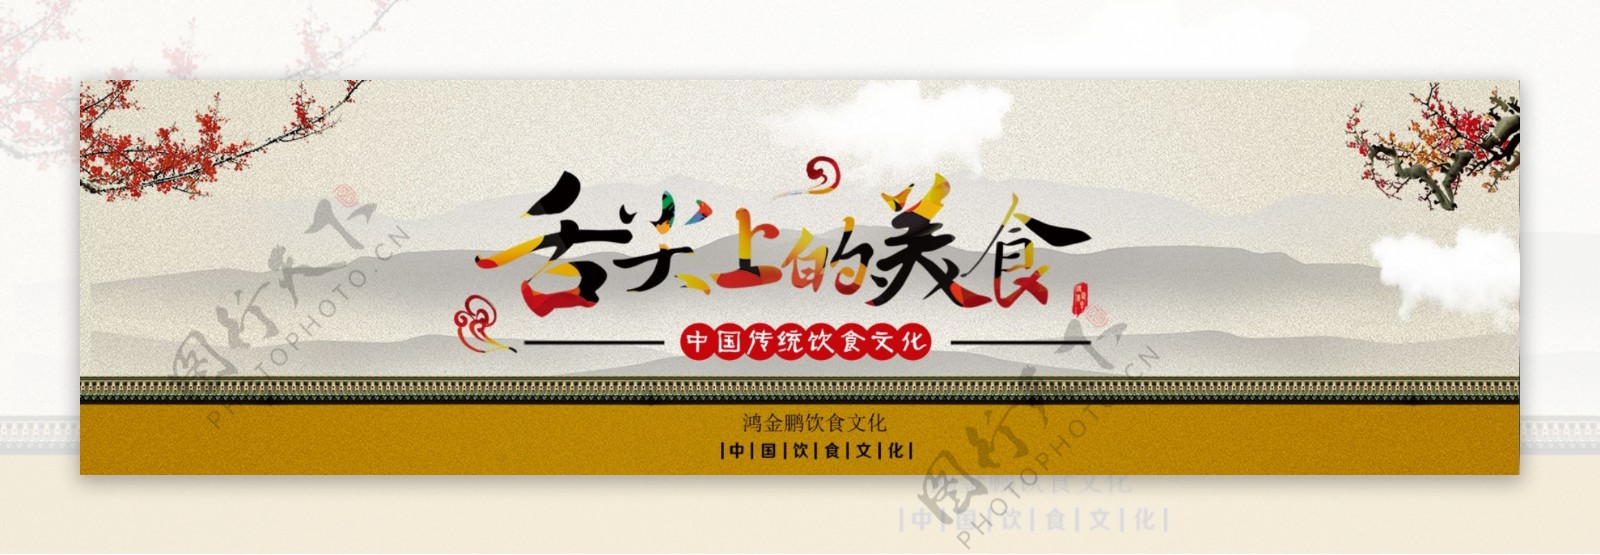 金鹏餐饮文化banner中国风舌尖上美食